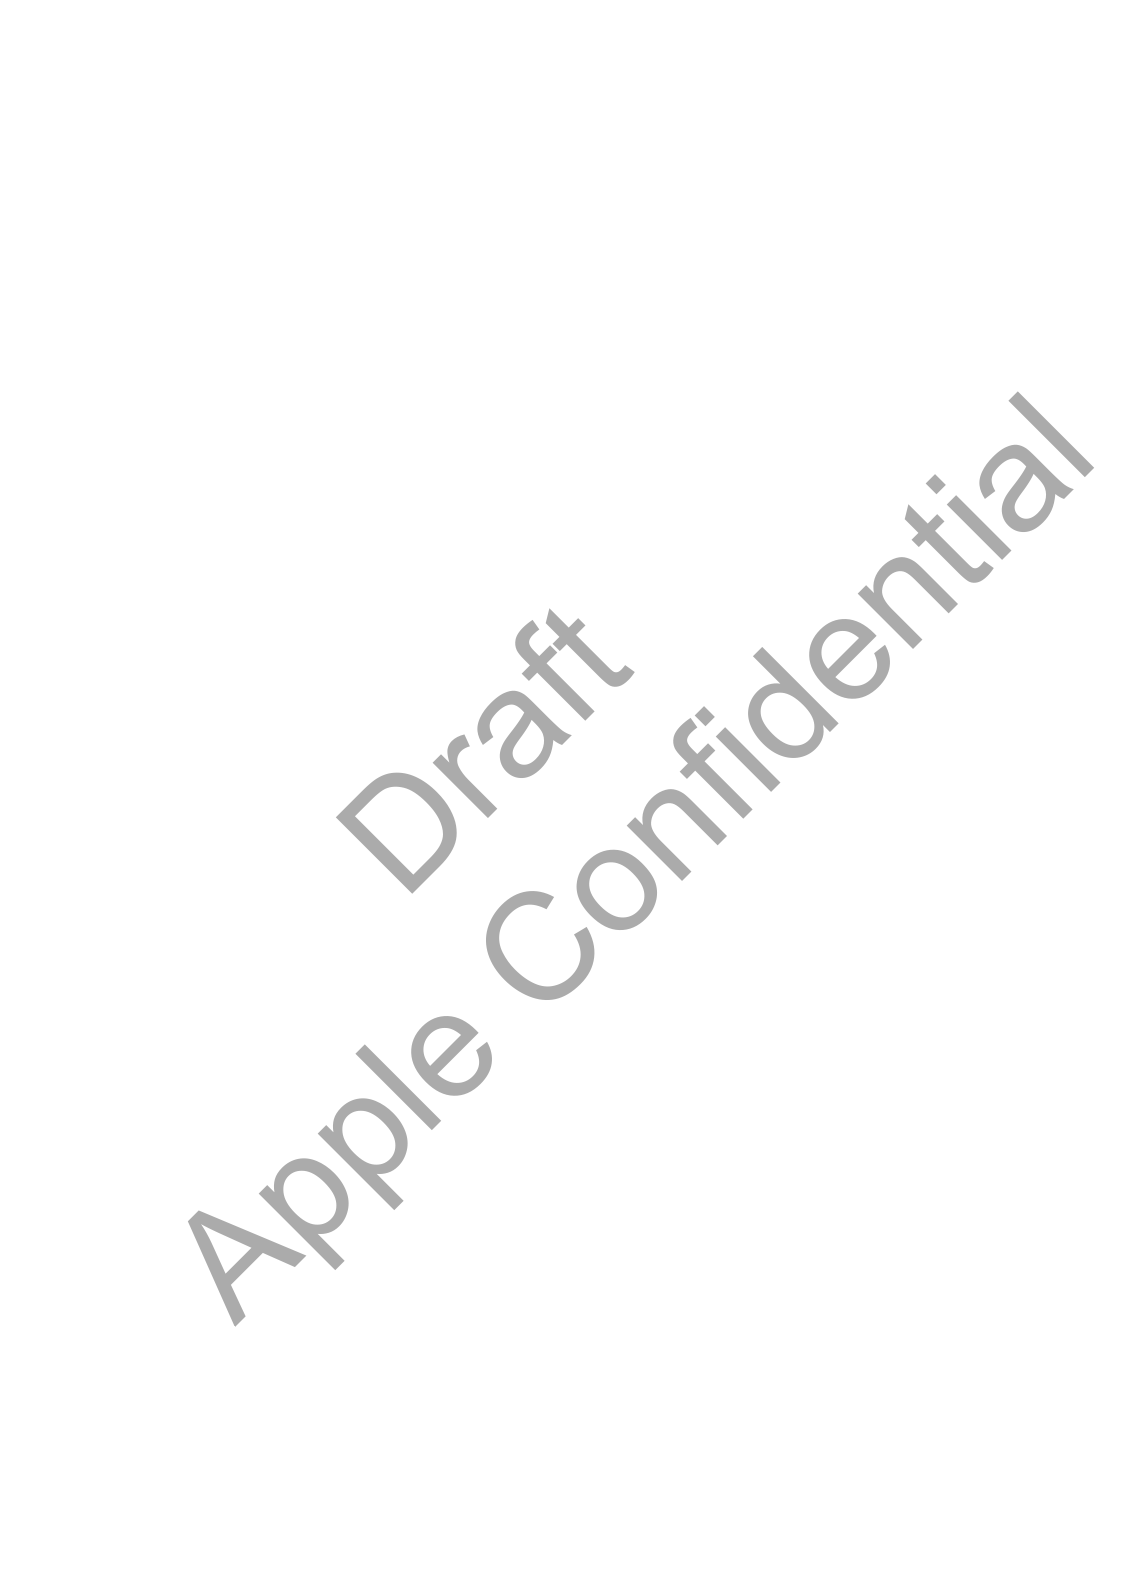           Draft  Apple Confidential 